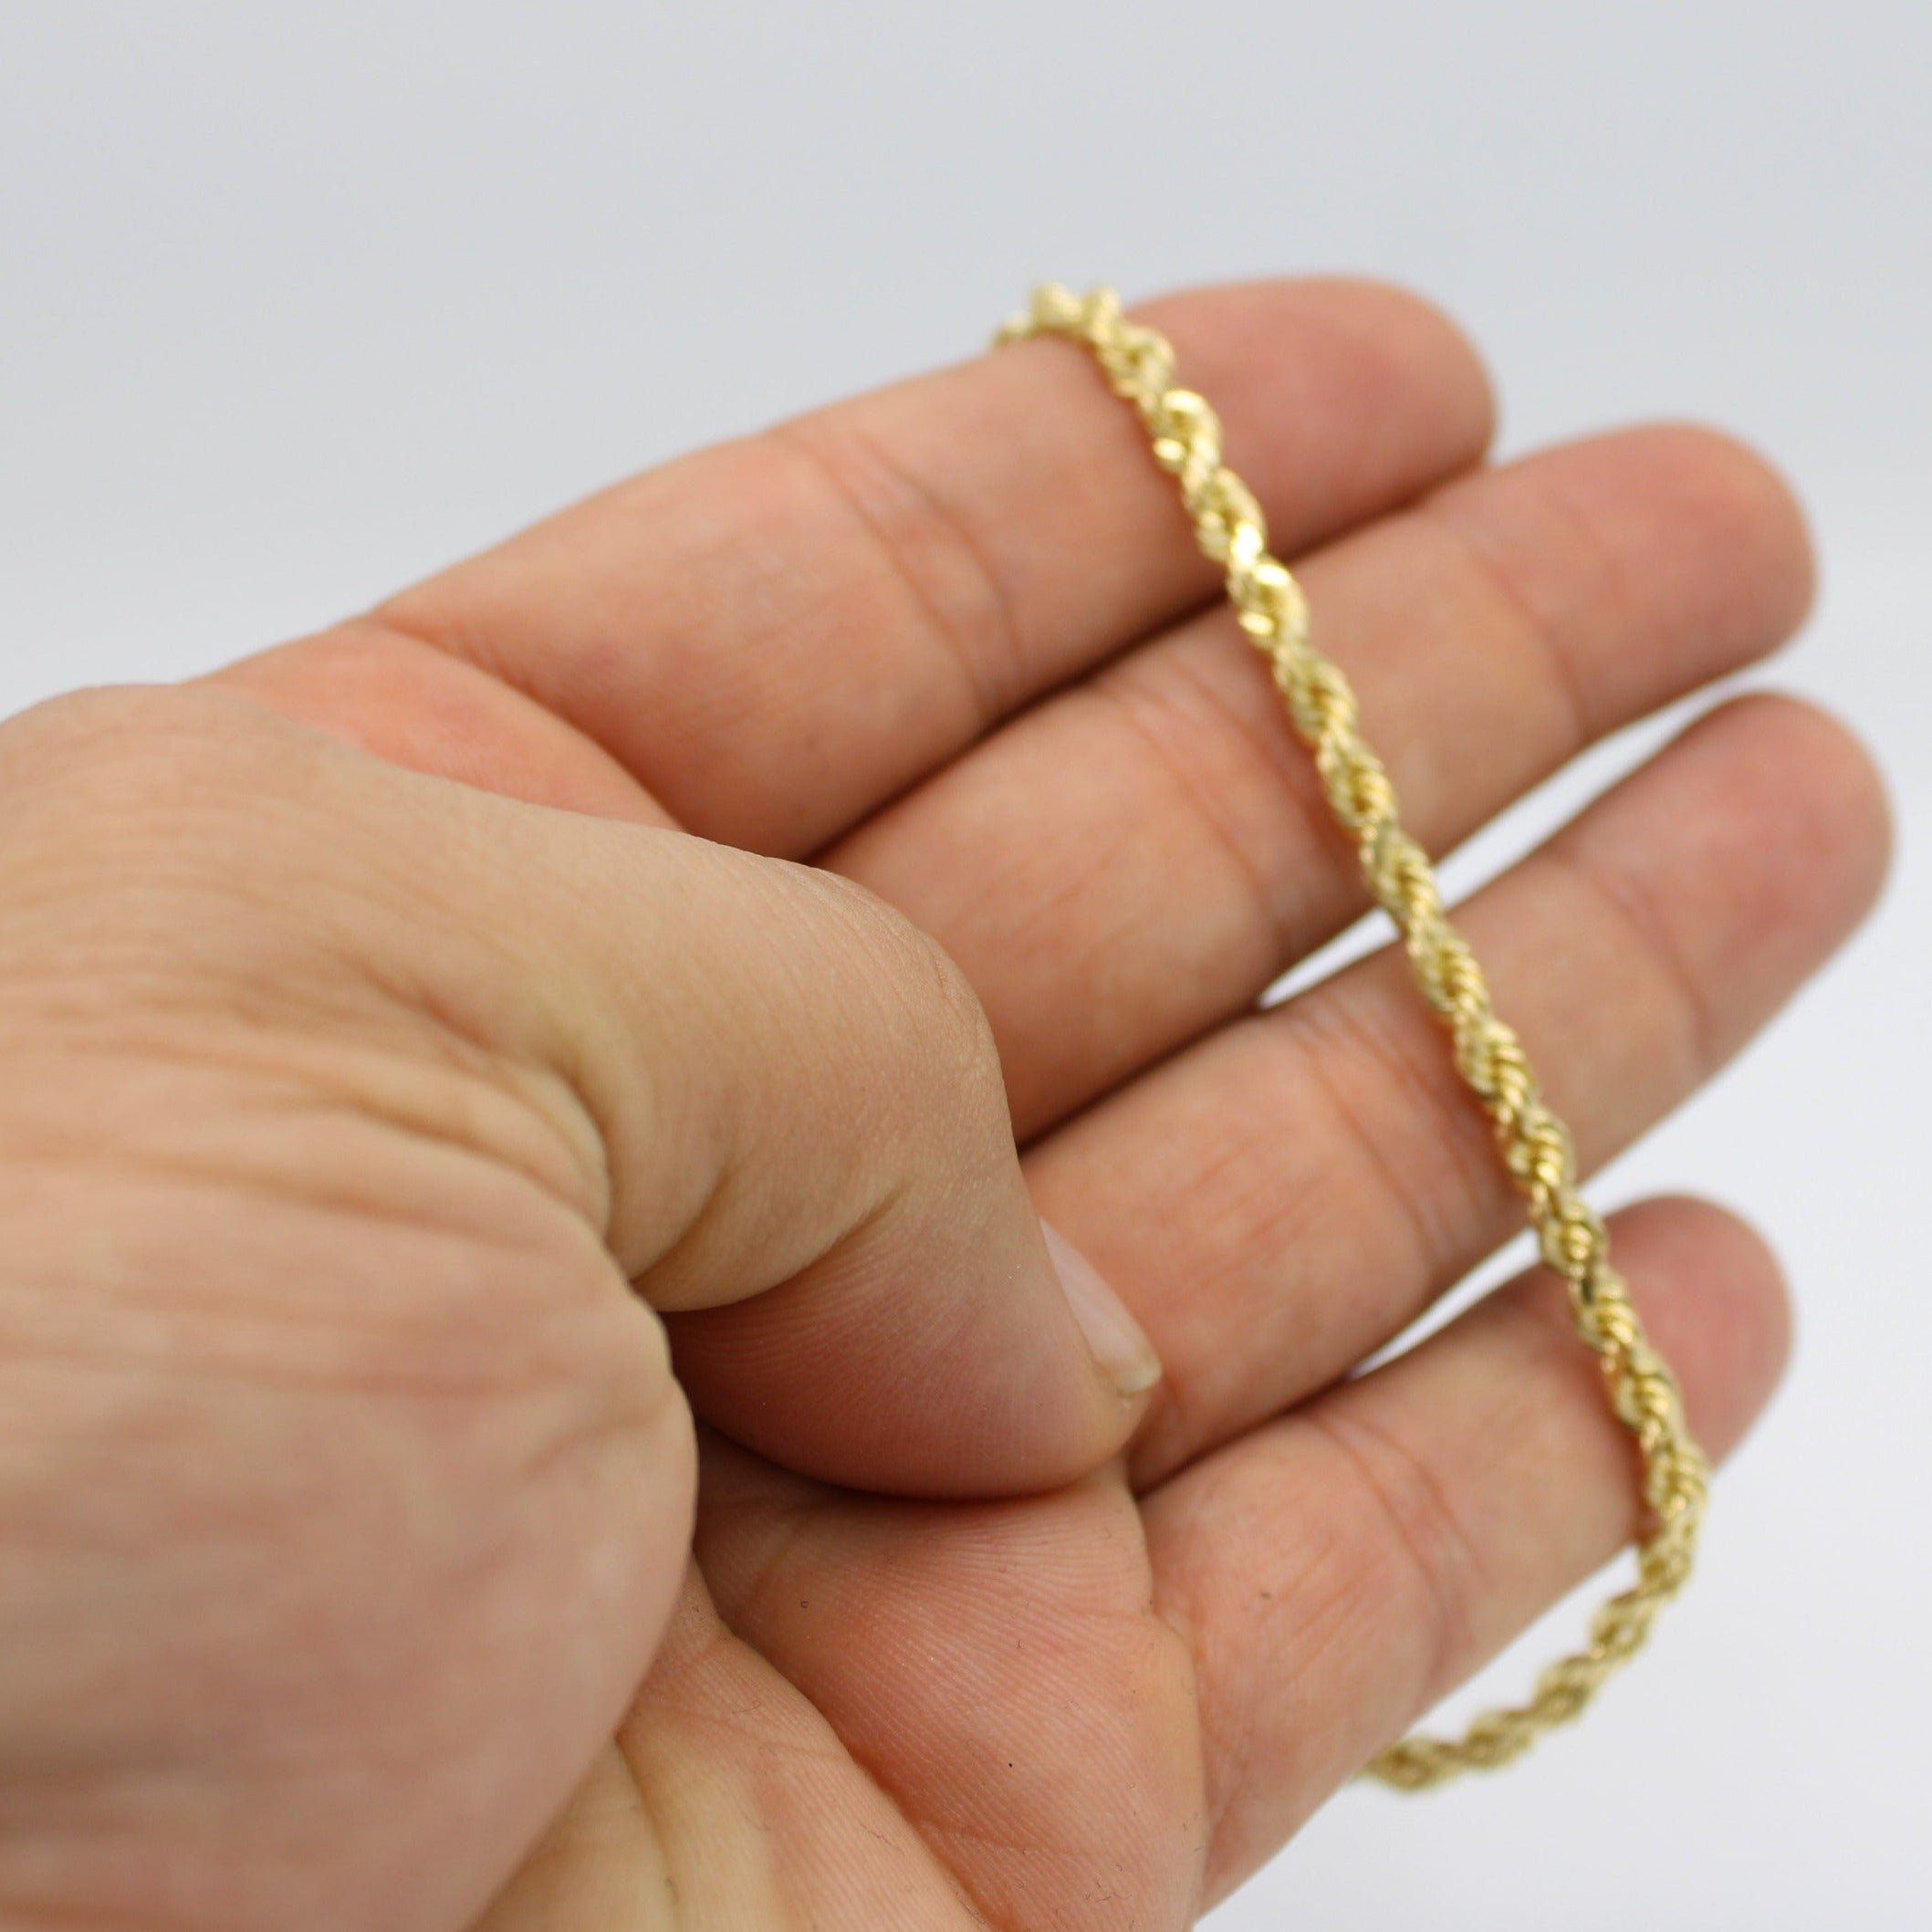 10k yellow gold 6mm wide 8 inch long diamond cut rope bracelet